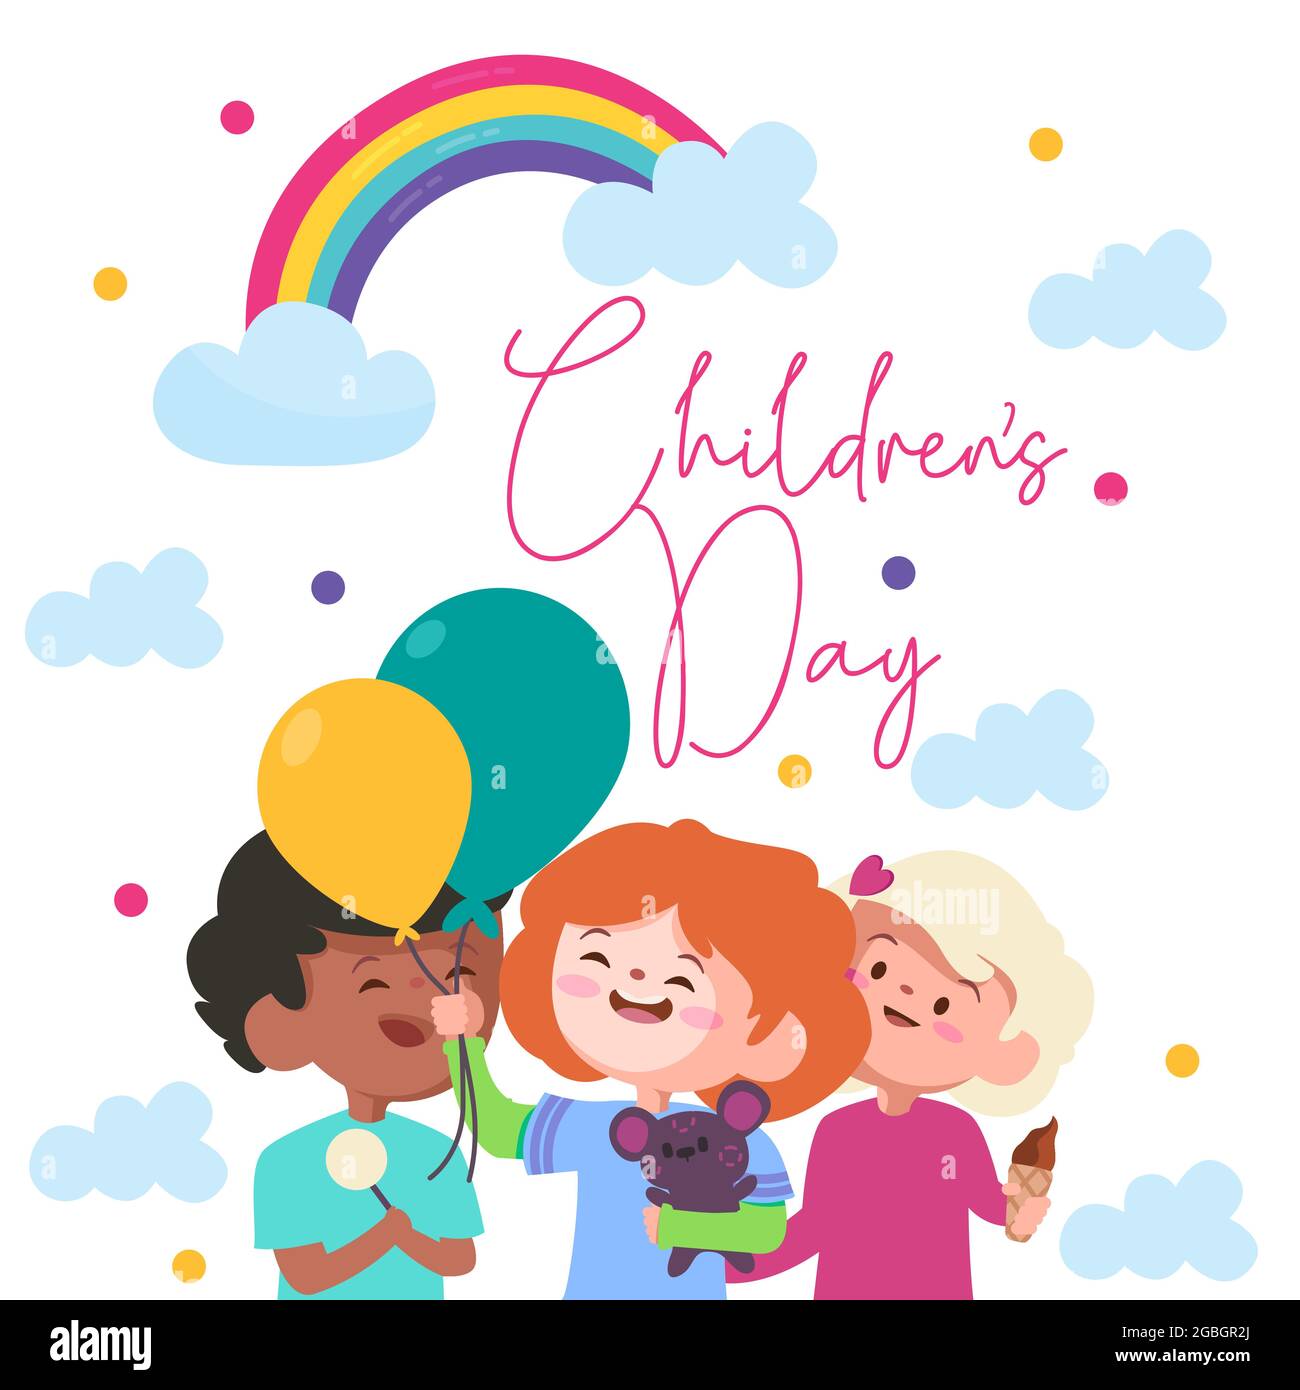 célébration de la journée des enfants avec un arc-en-ciel coloré avec les nuages bleus et trois enfants avec des ballons verts et jaunes Illustration de Vecteur